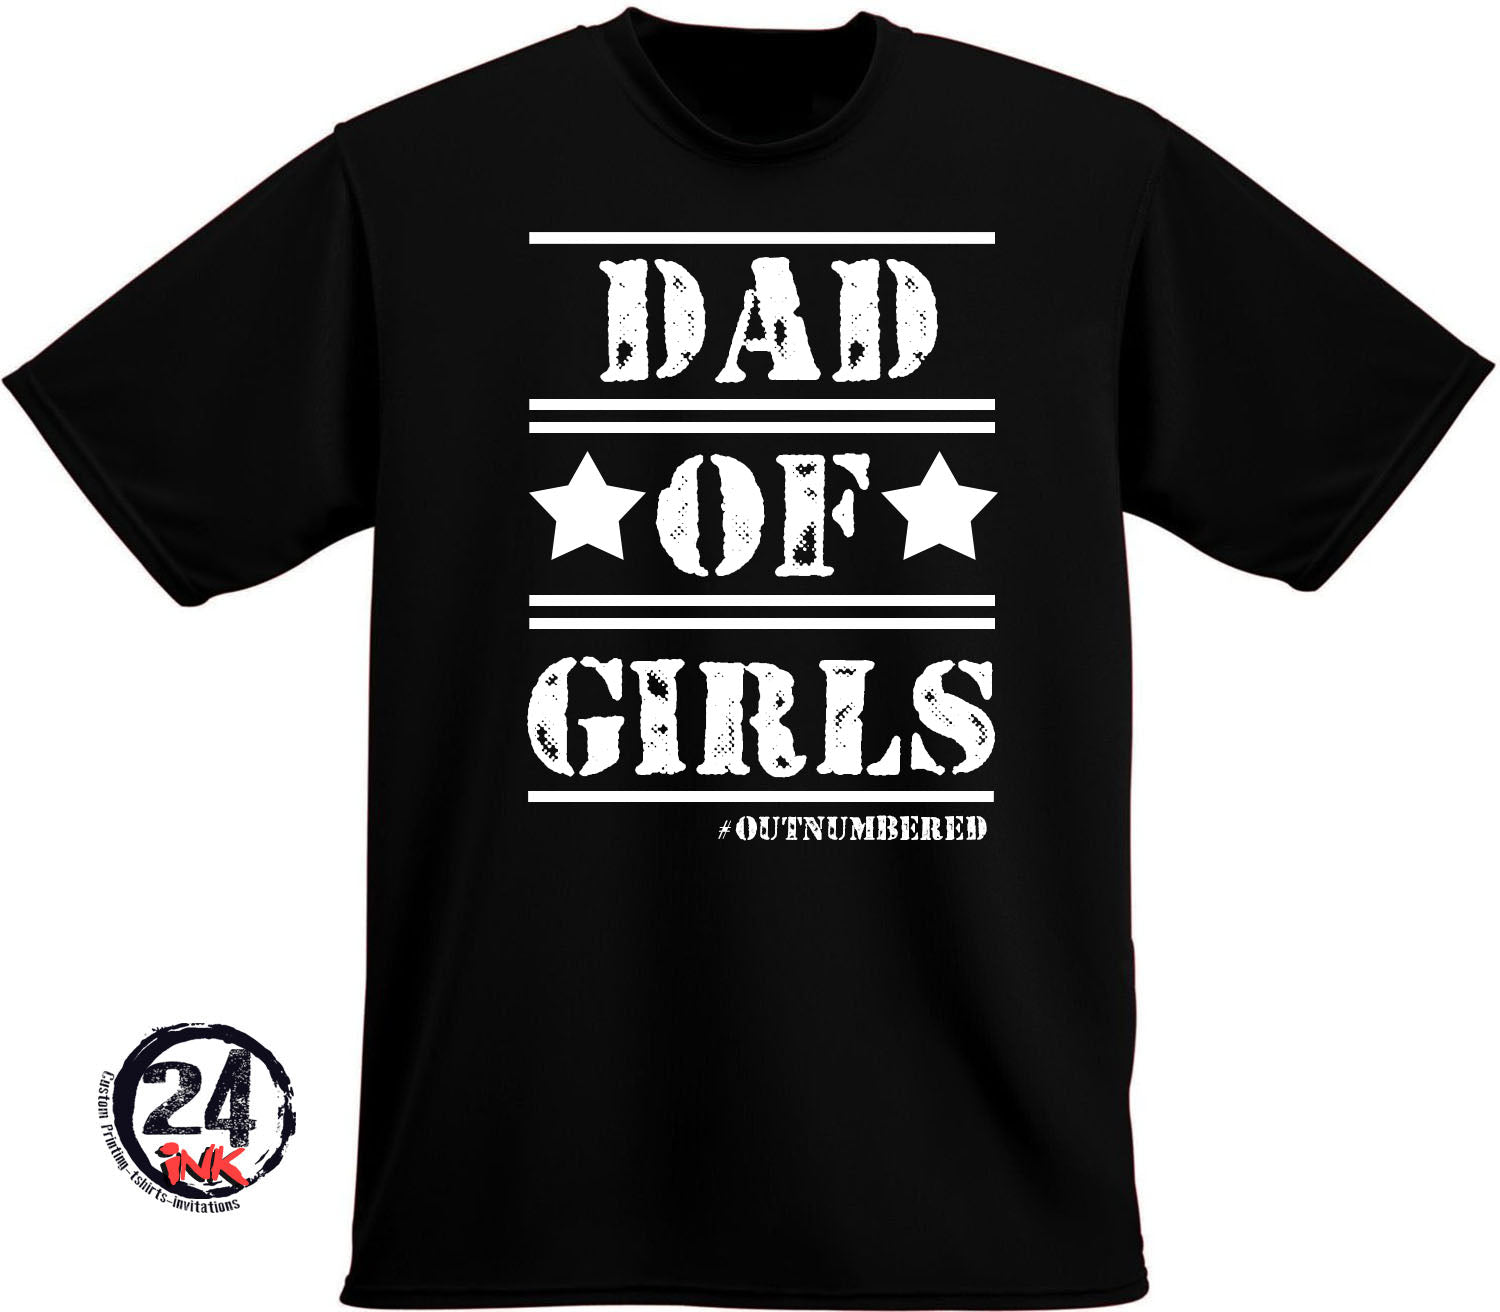 Dad of Girls T-Shirt